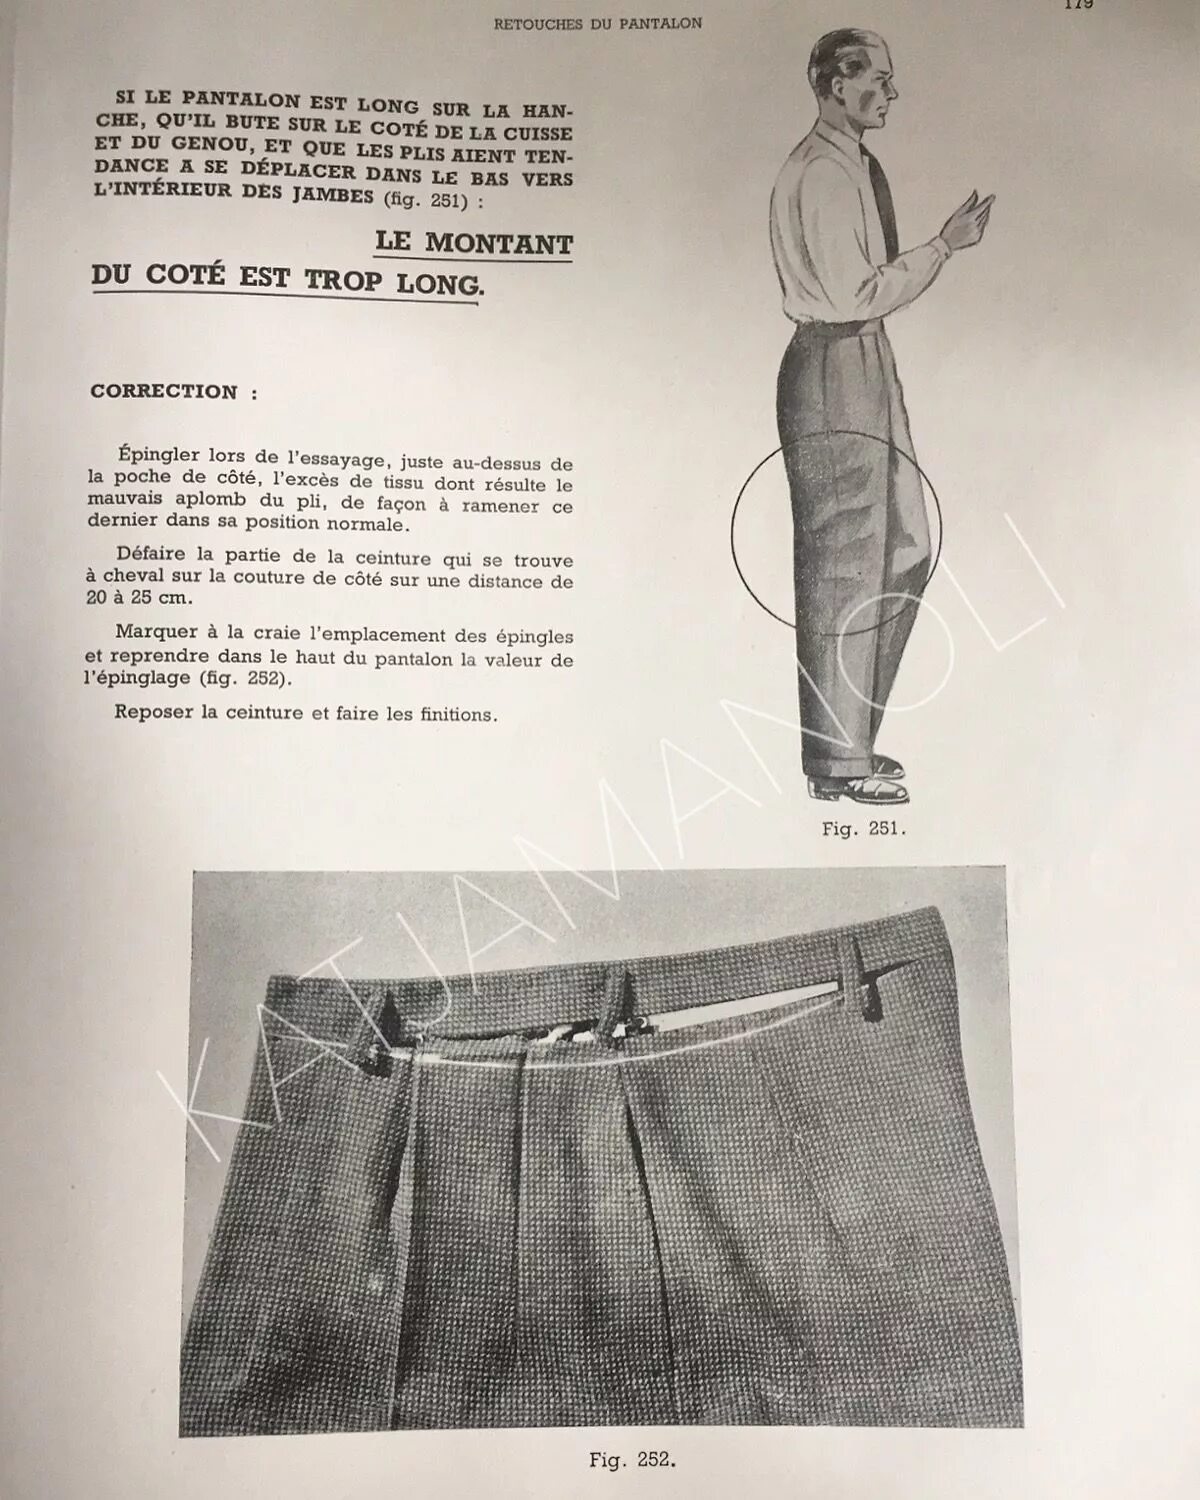 6 брюк словами. Женские брюки реклама. Реклама штанов. Штаны с текстом. Рекламы с текстом про штаны.